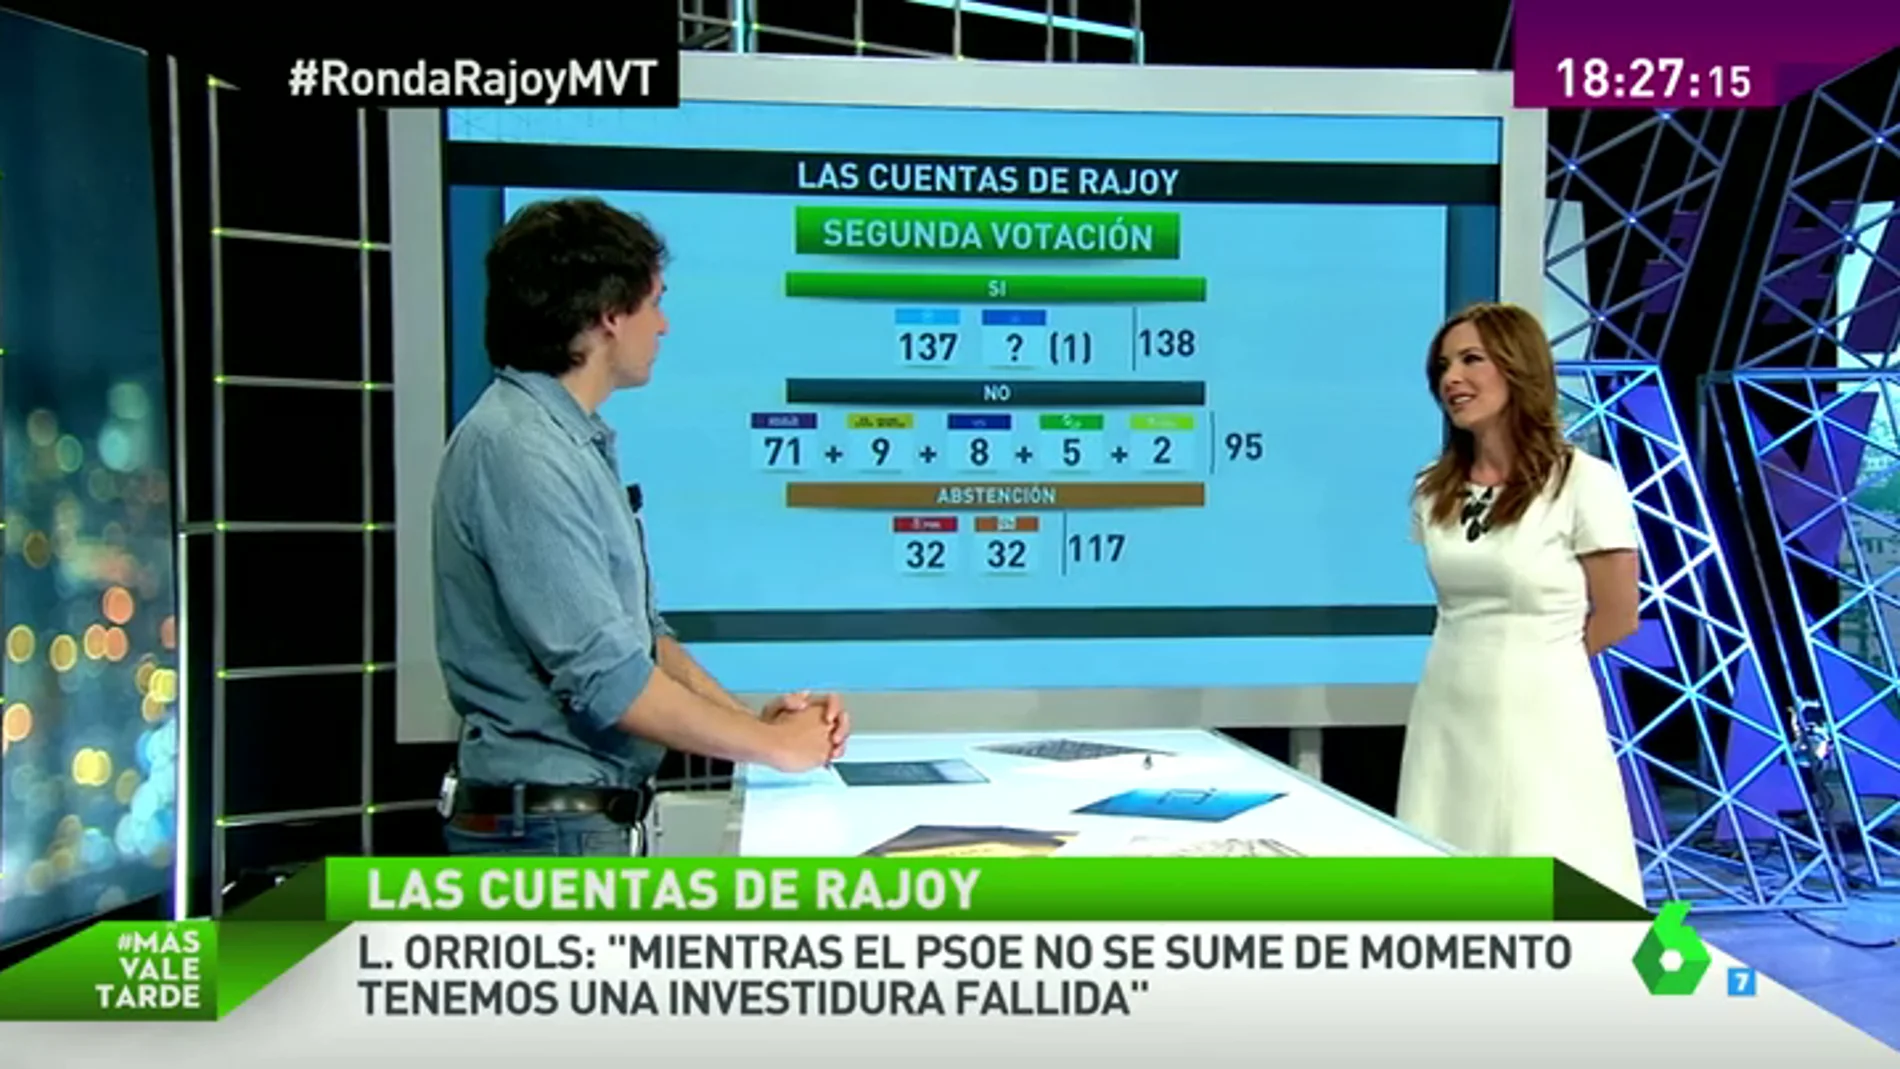  Las cuentas de Rajoy: si los partidos no cambian sus posturas habrá terceras elecciones